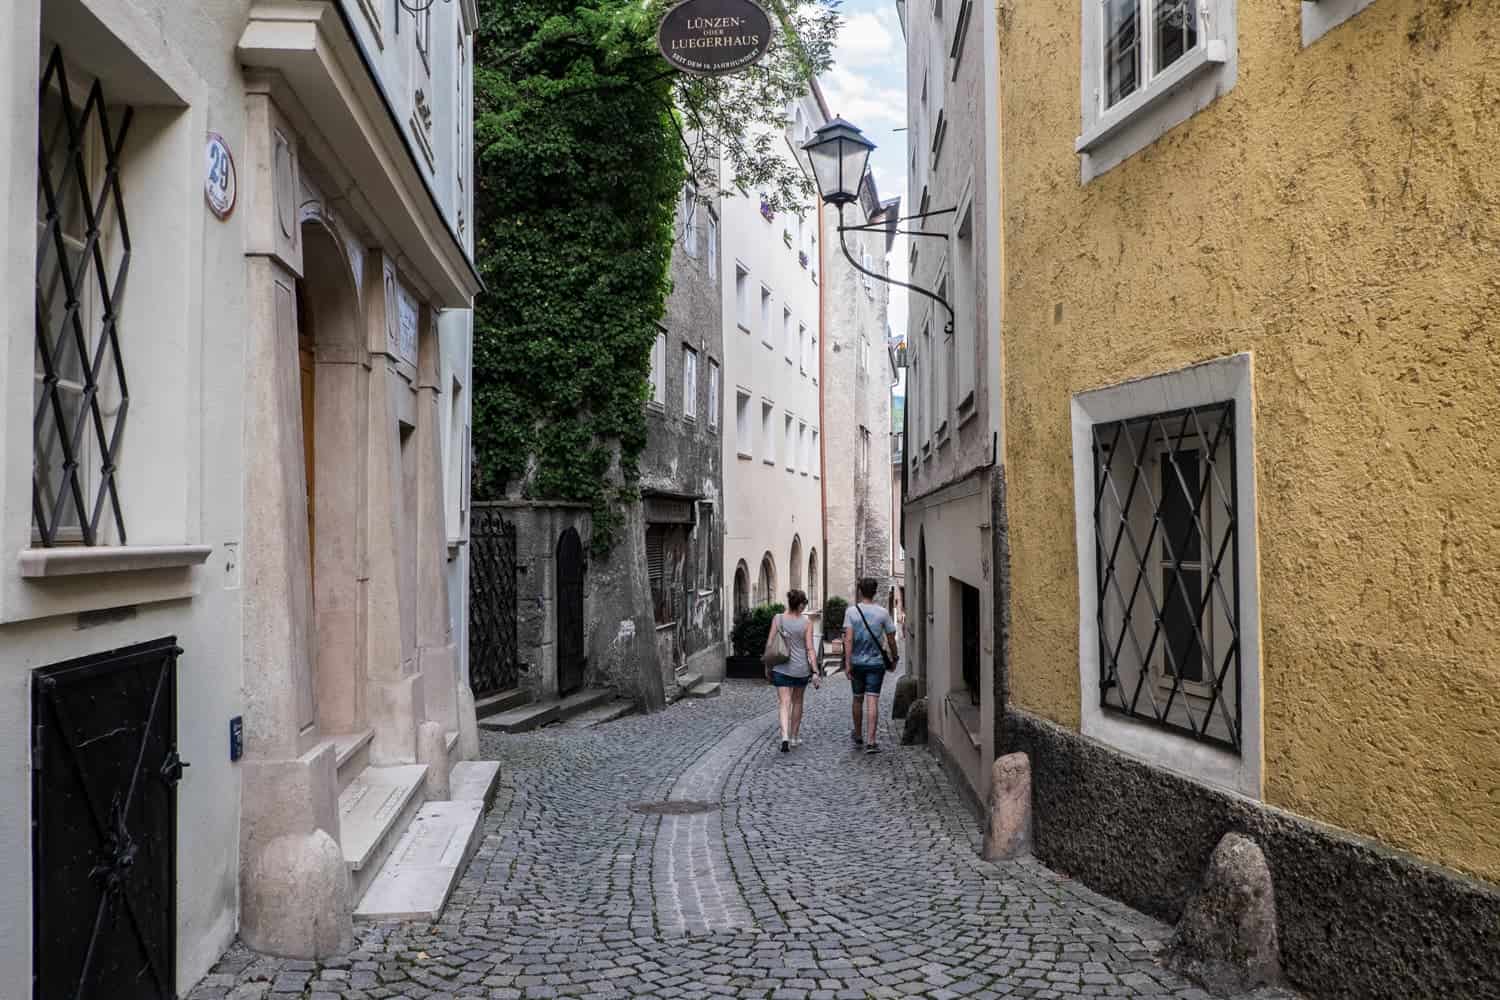 Steingasse (stone street) in Salzburg, Austria